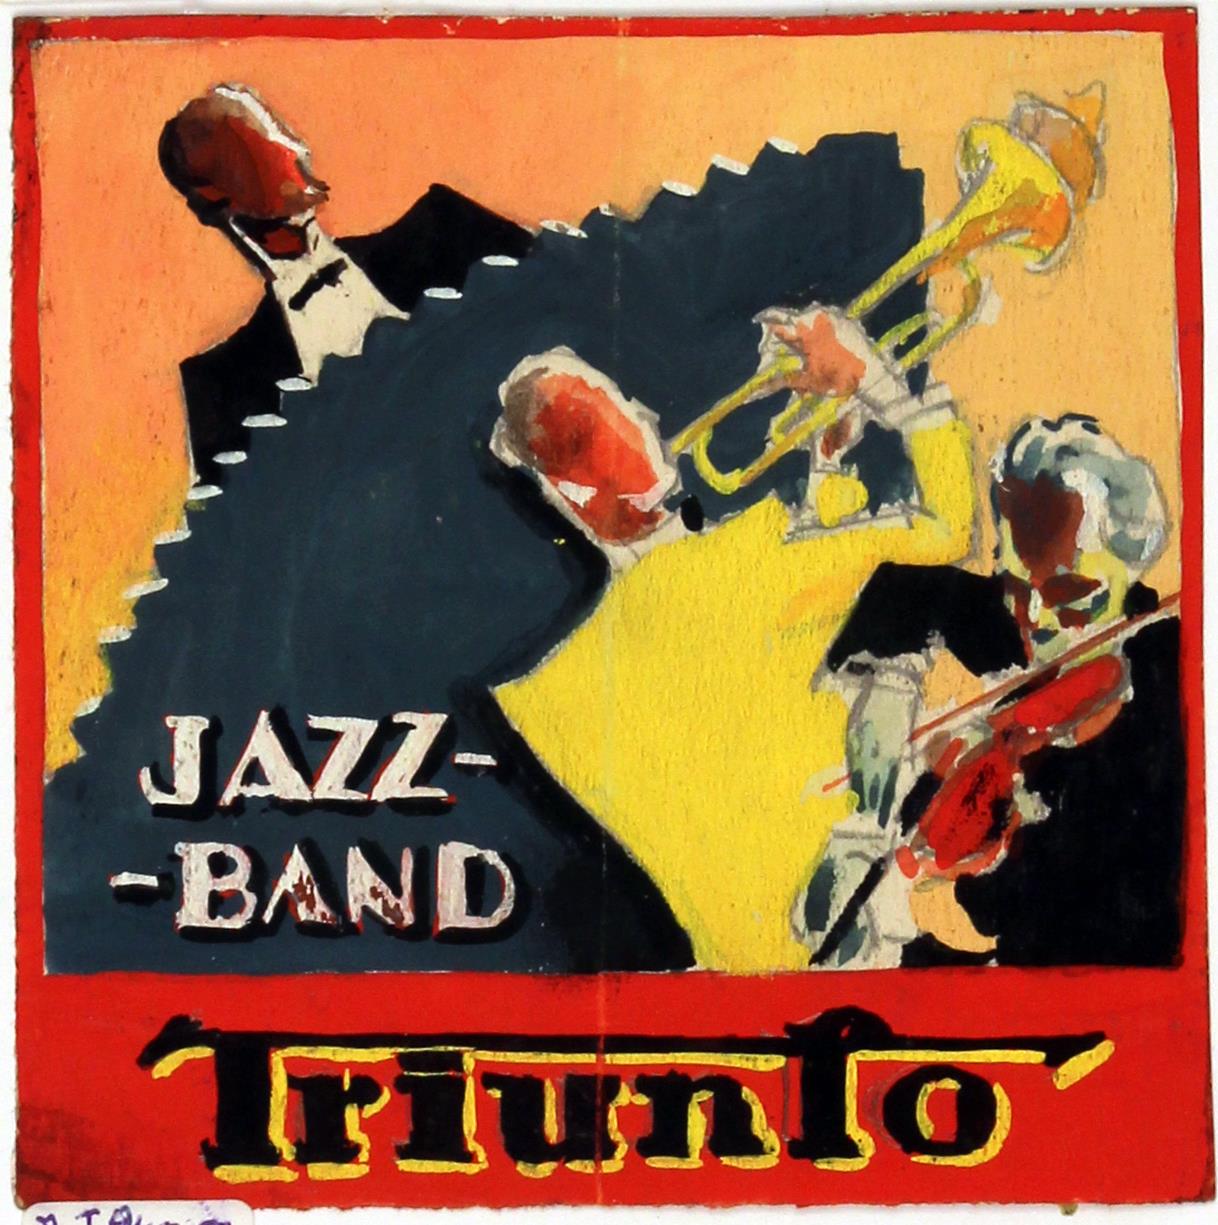 Jazz Band Triunfo